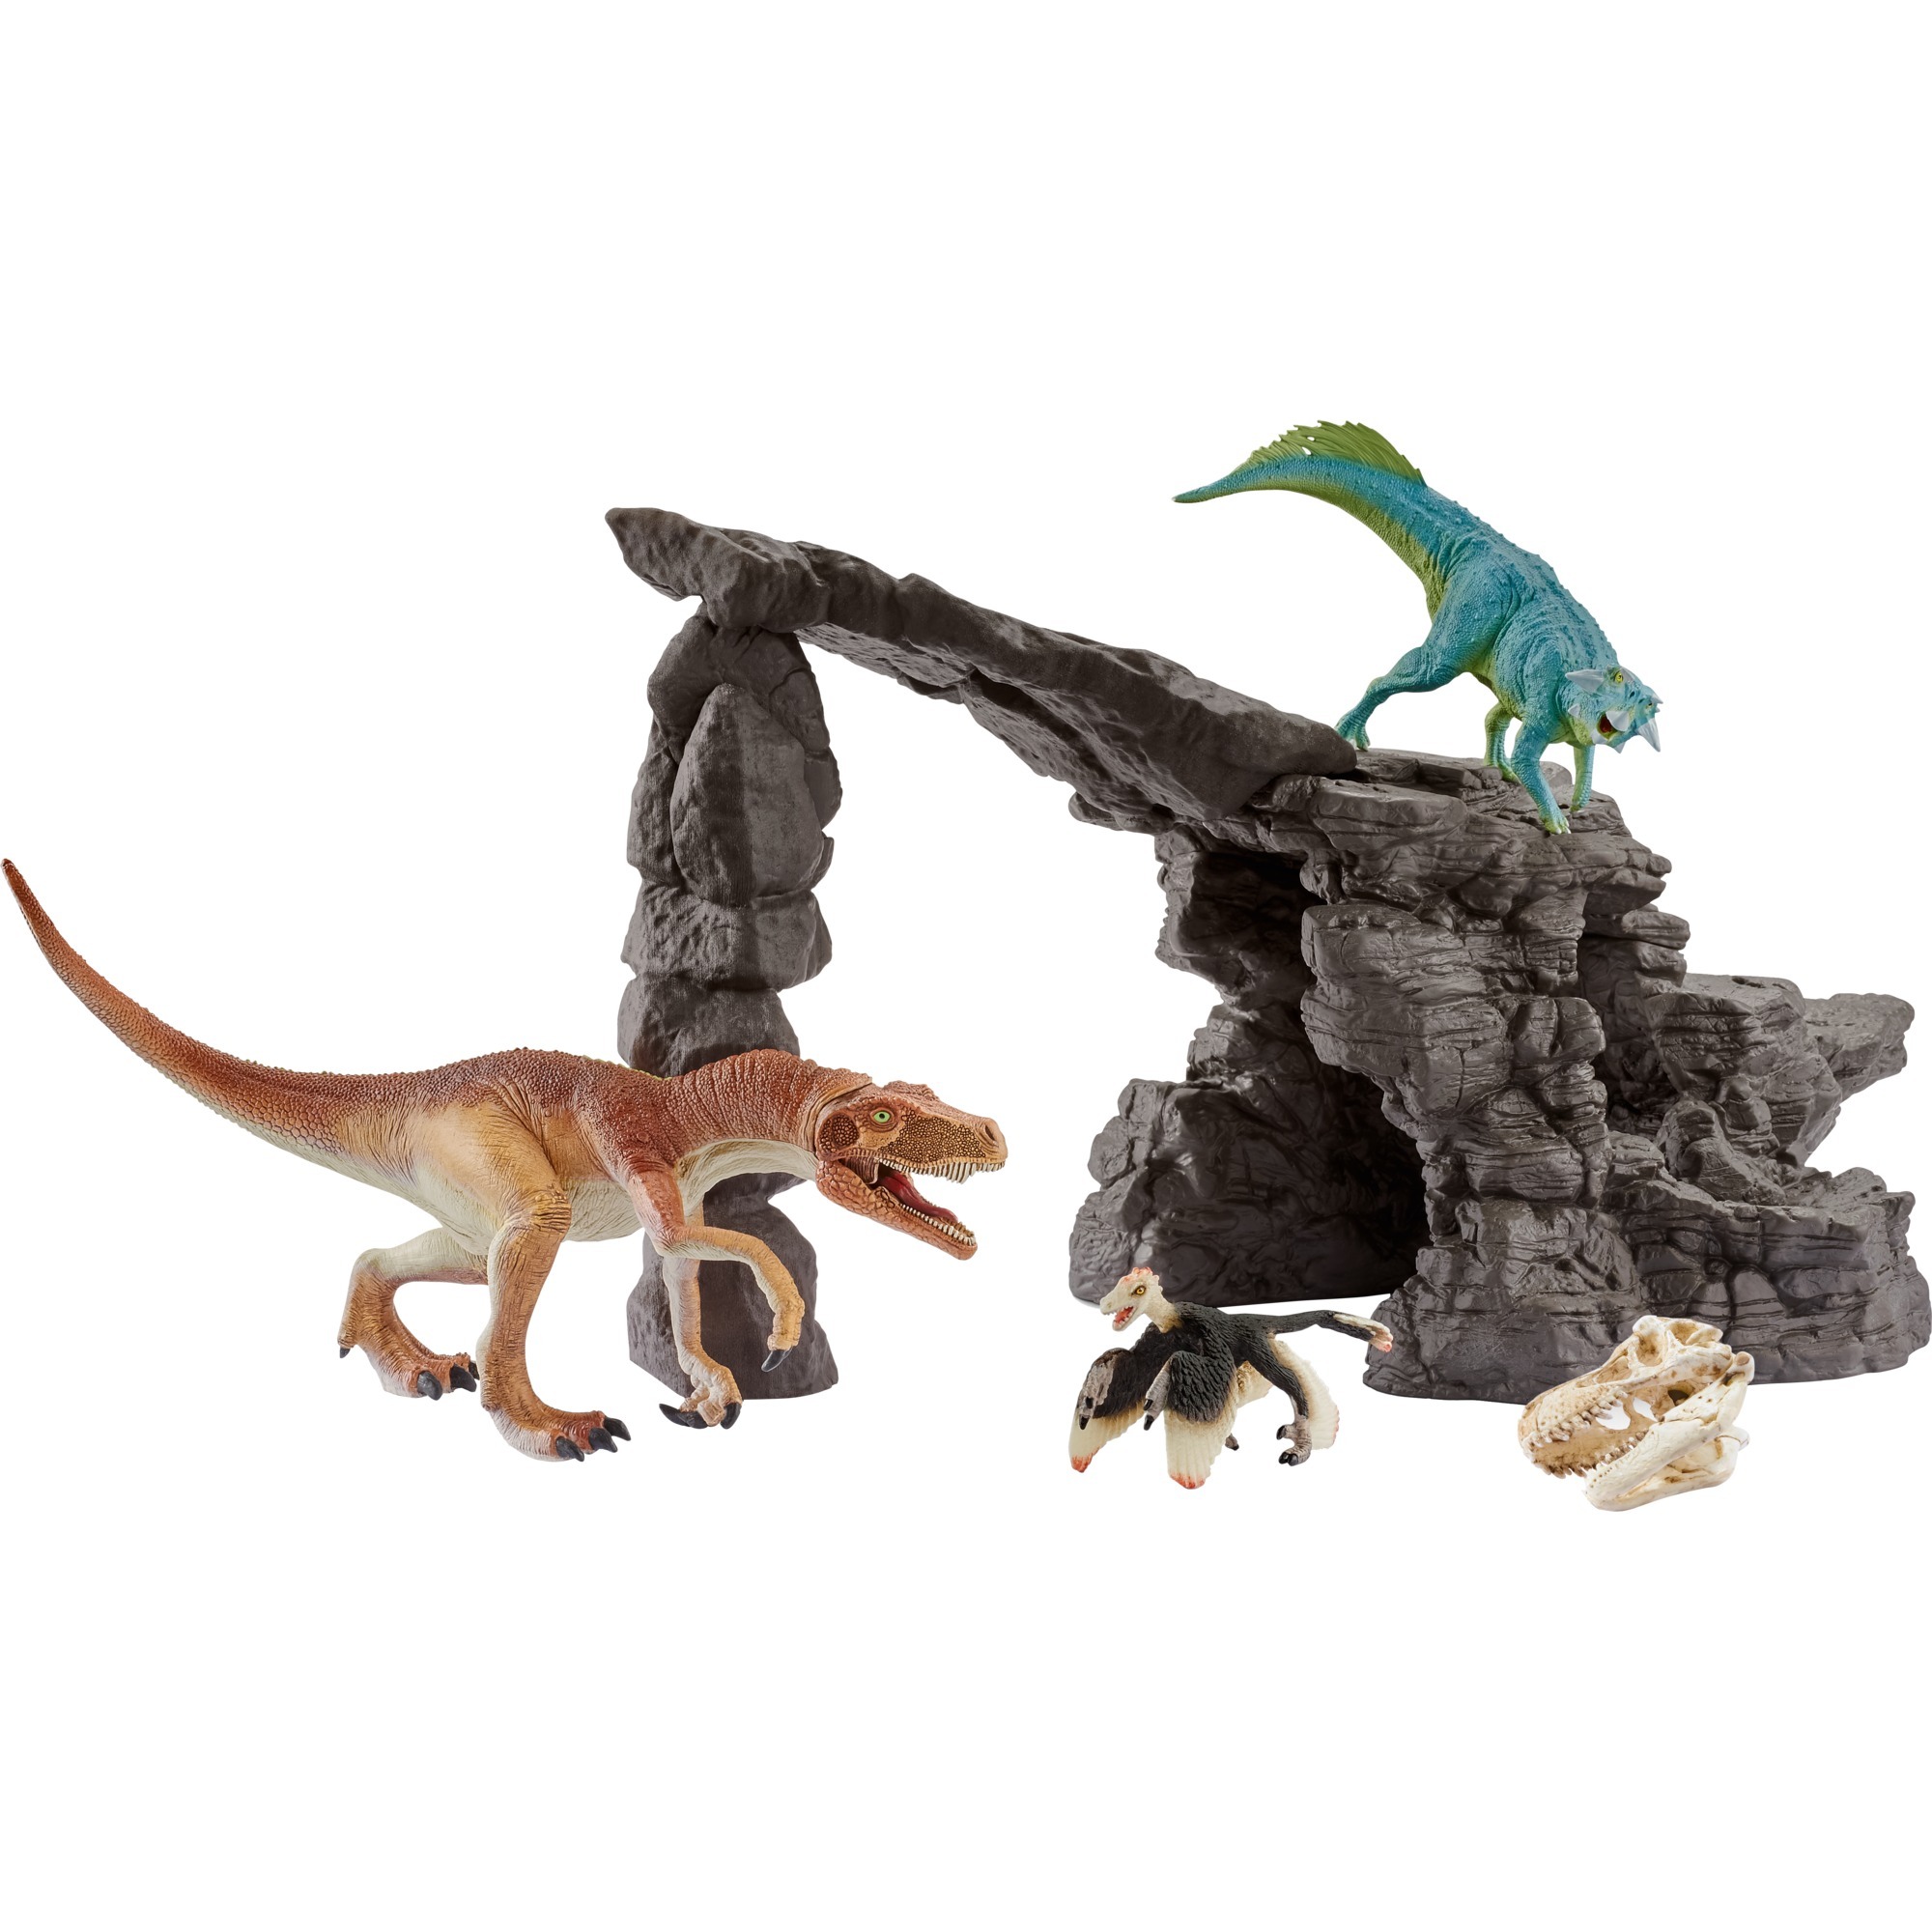 Image of Alternate - Dinosaurier Dinoset mit Höhle, Spielfigur online einkaufen bei Alternate